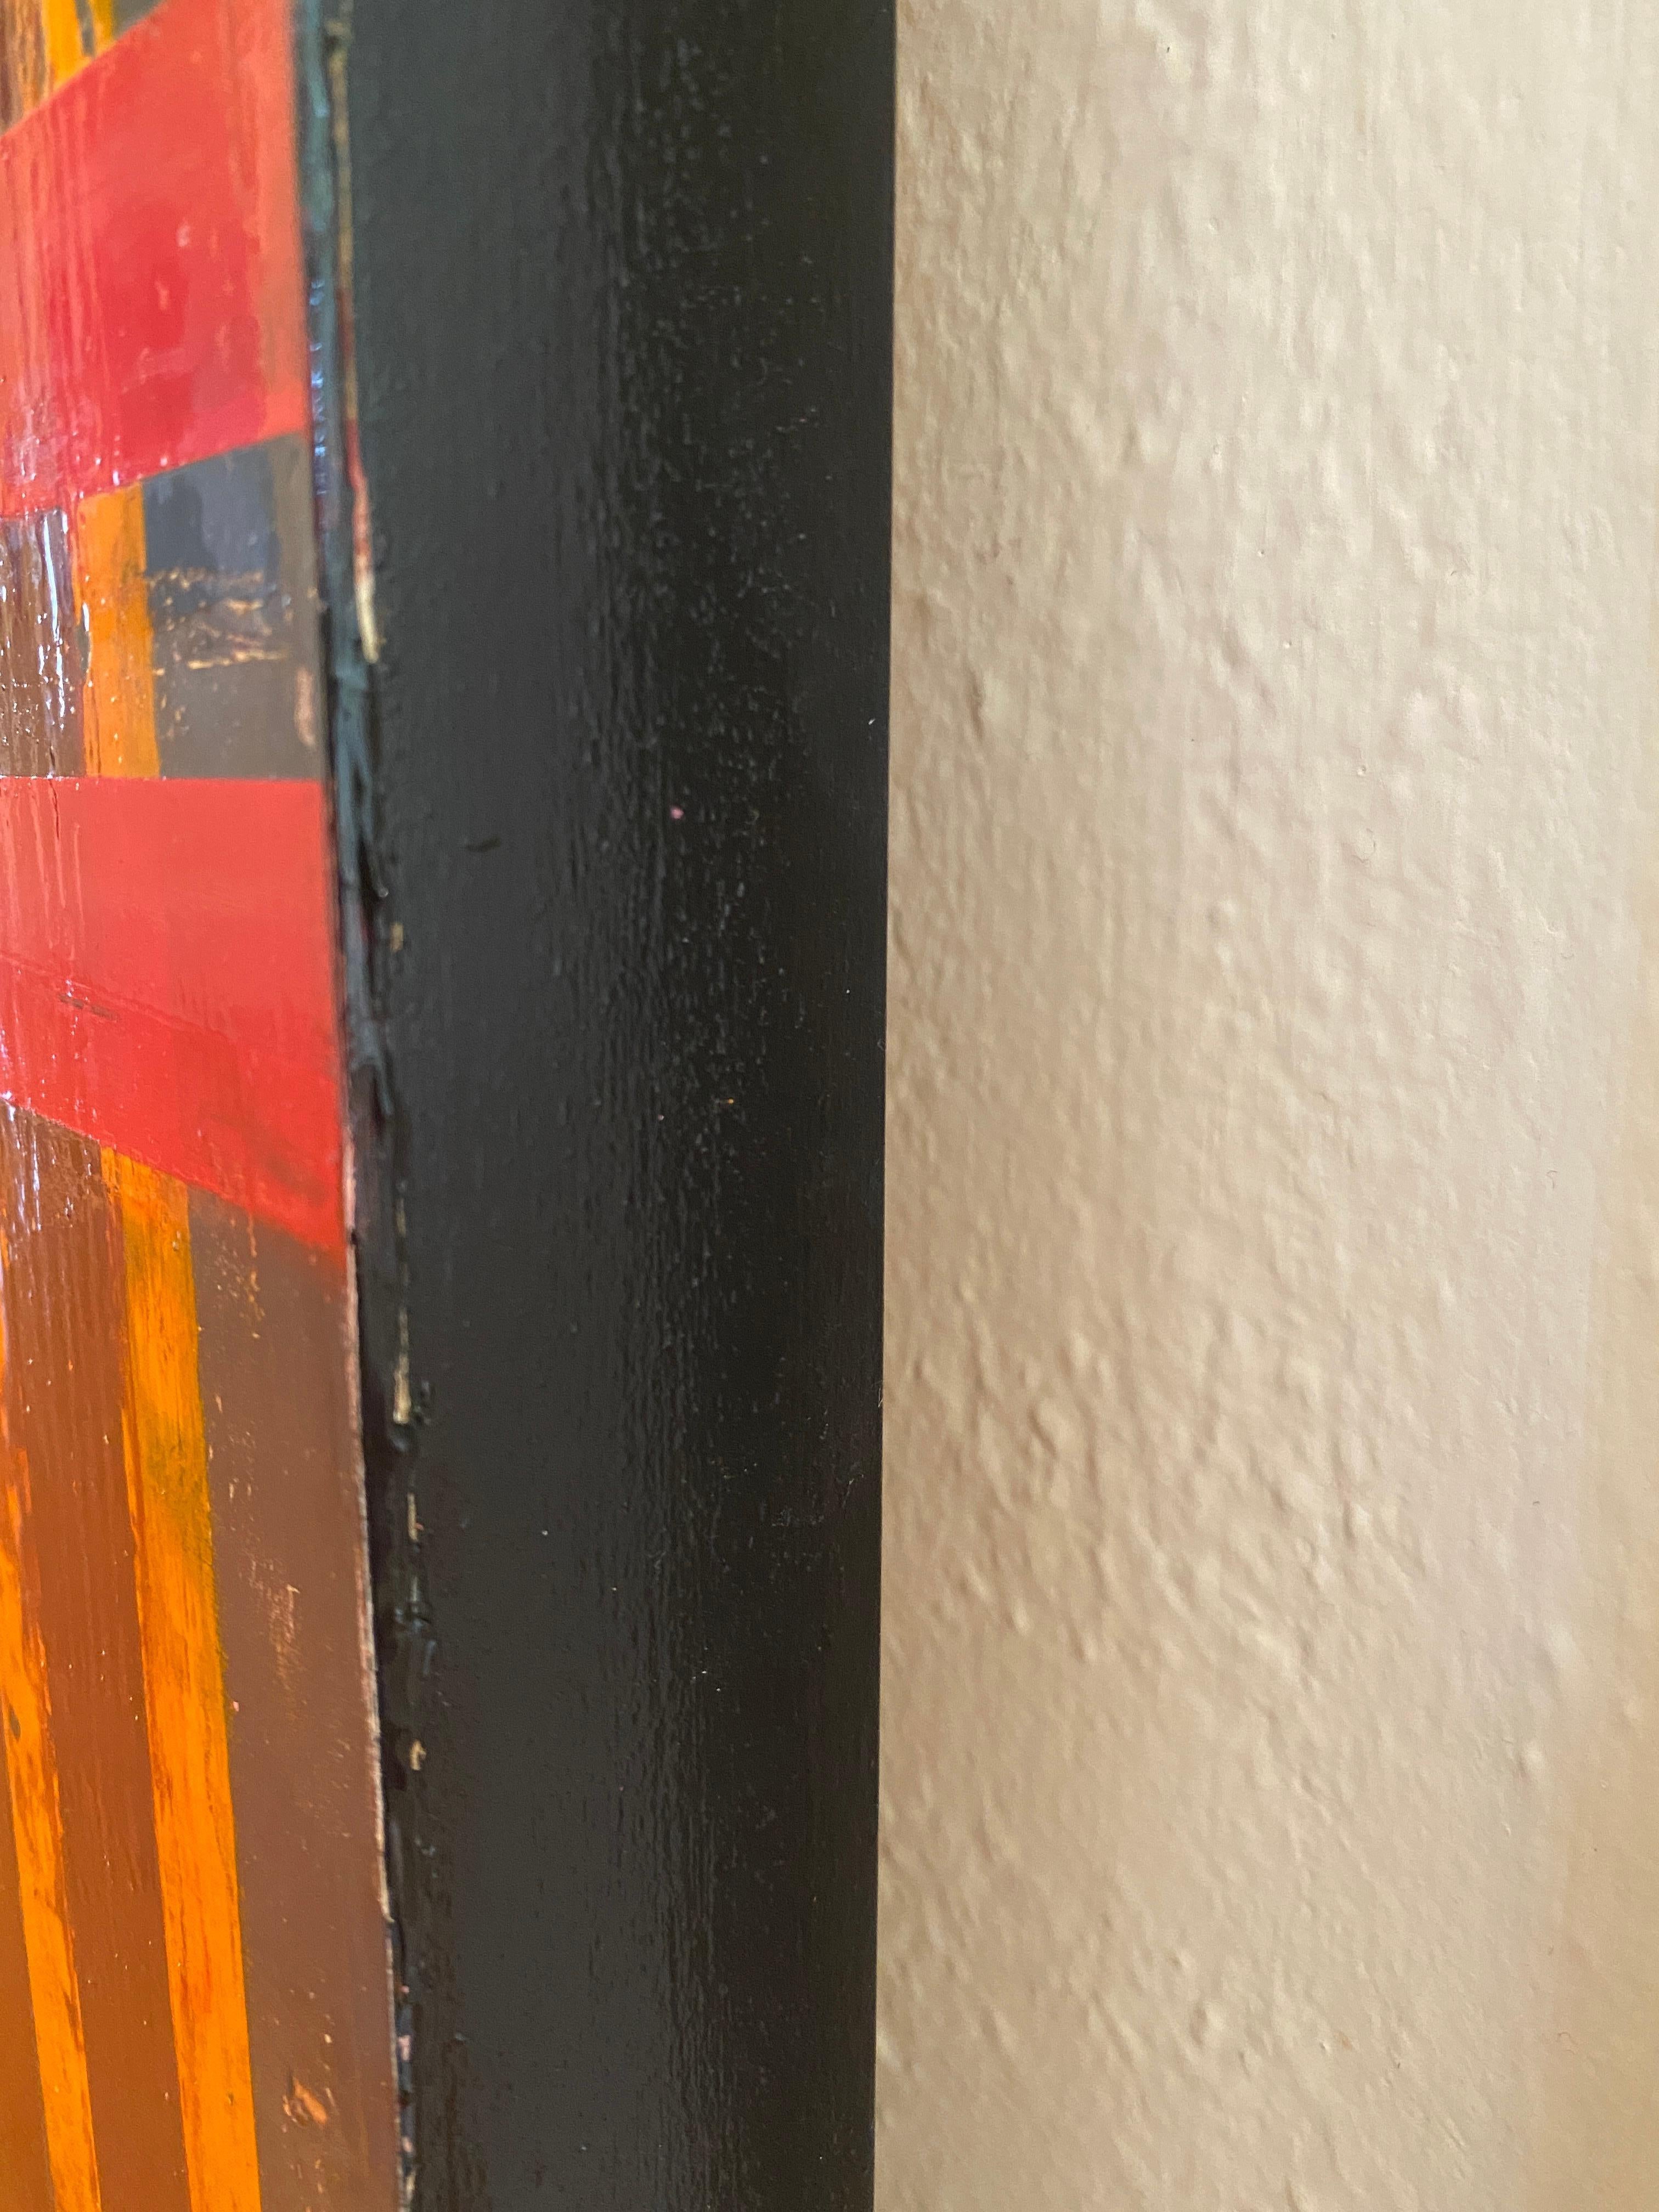 Wandmalerei in Florenz: rote und orangefarbene Streifen auf Karton, 2019 – Painting von Lisa Lightman